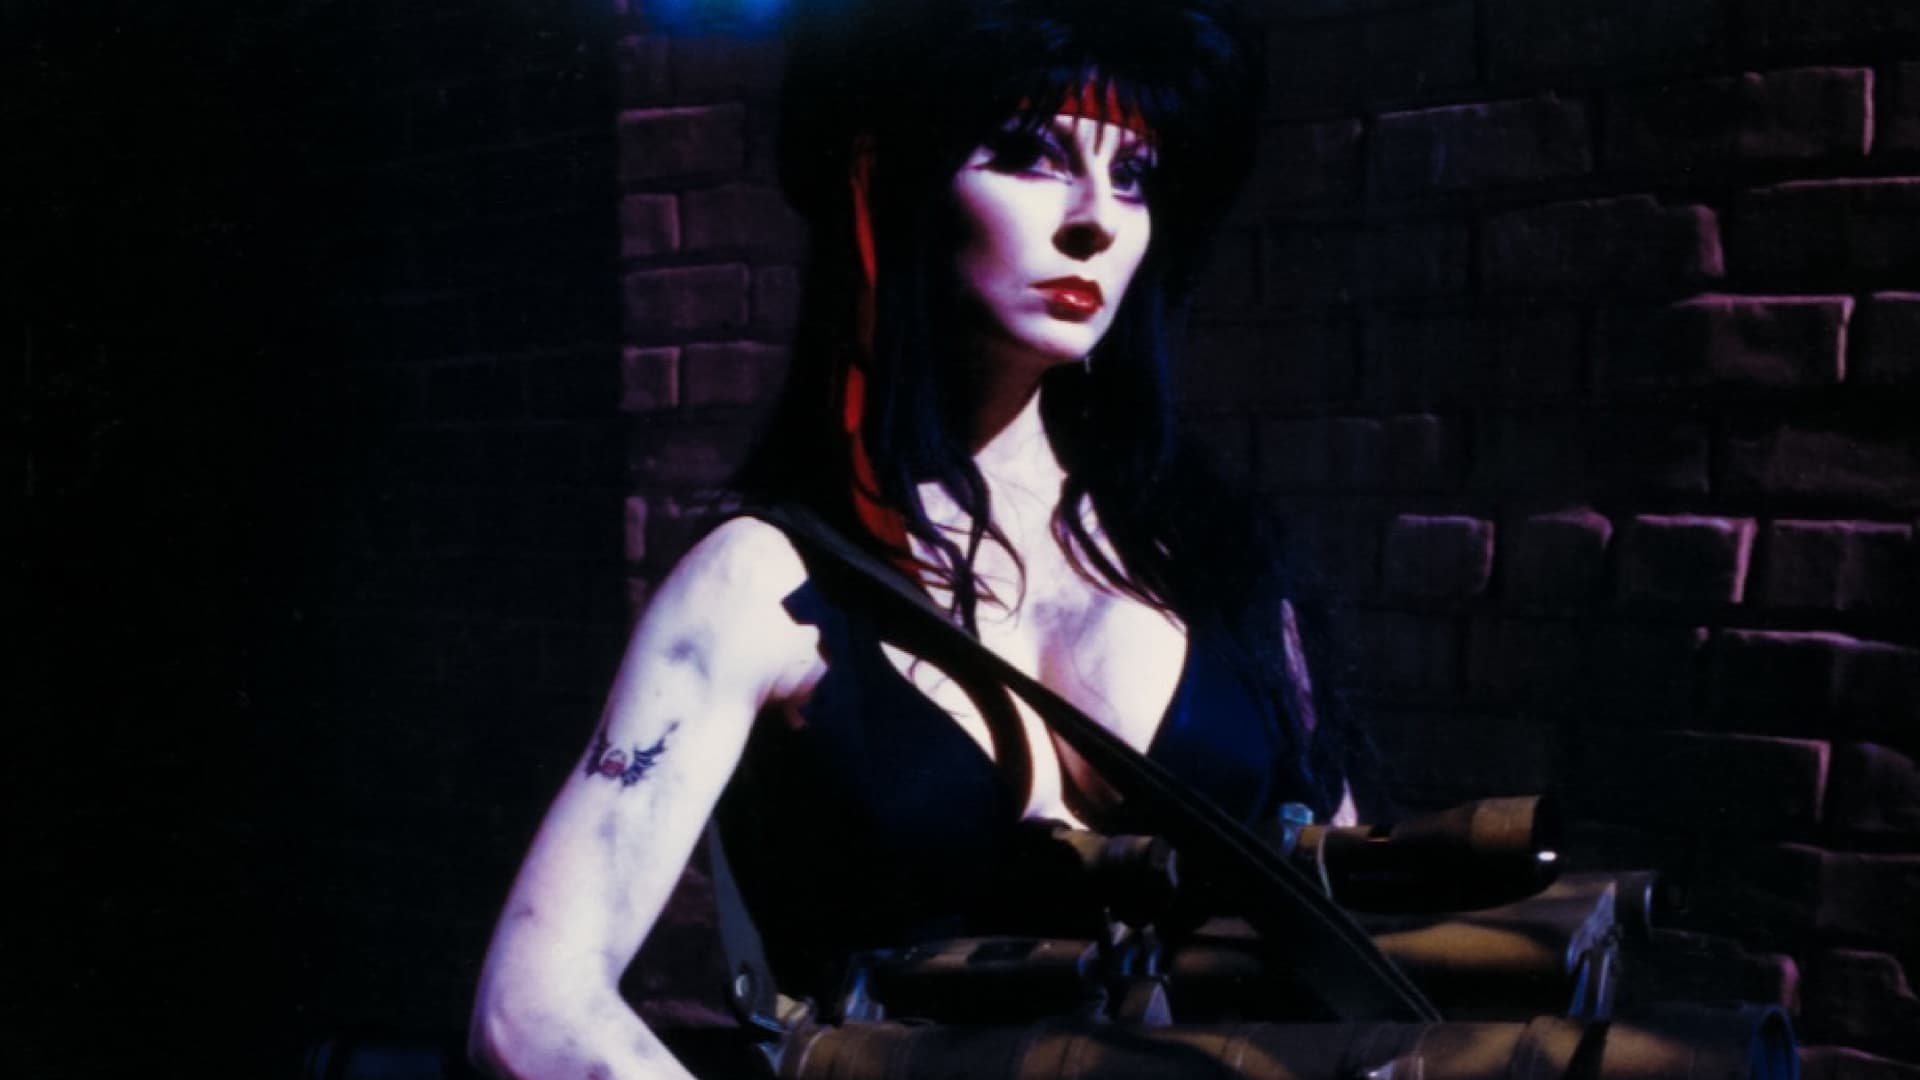 Elvira, la reina de las tinieblas